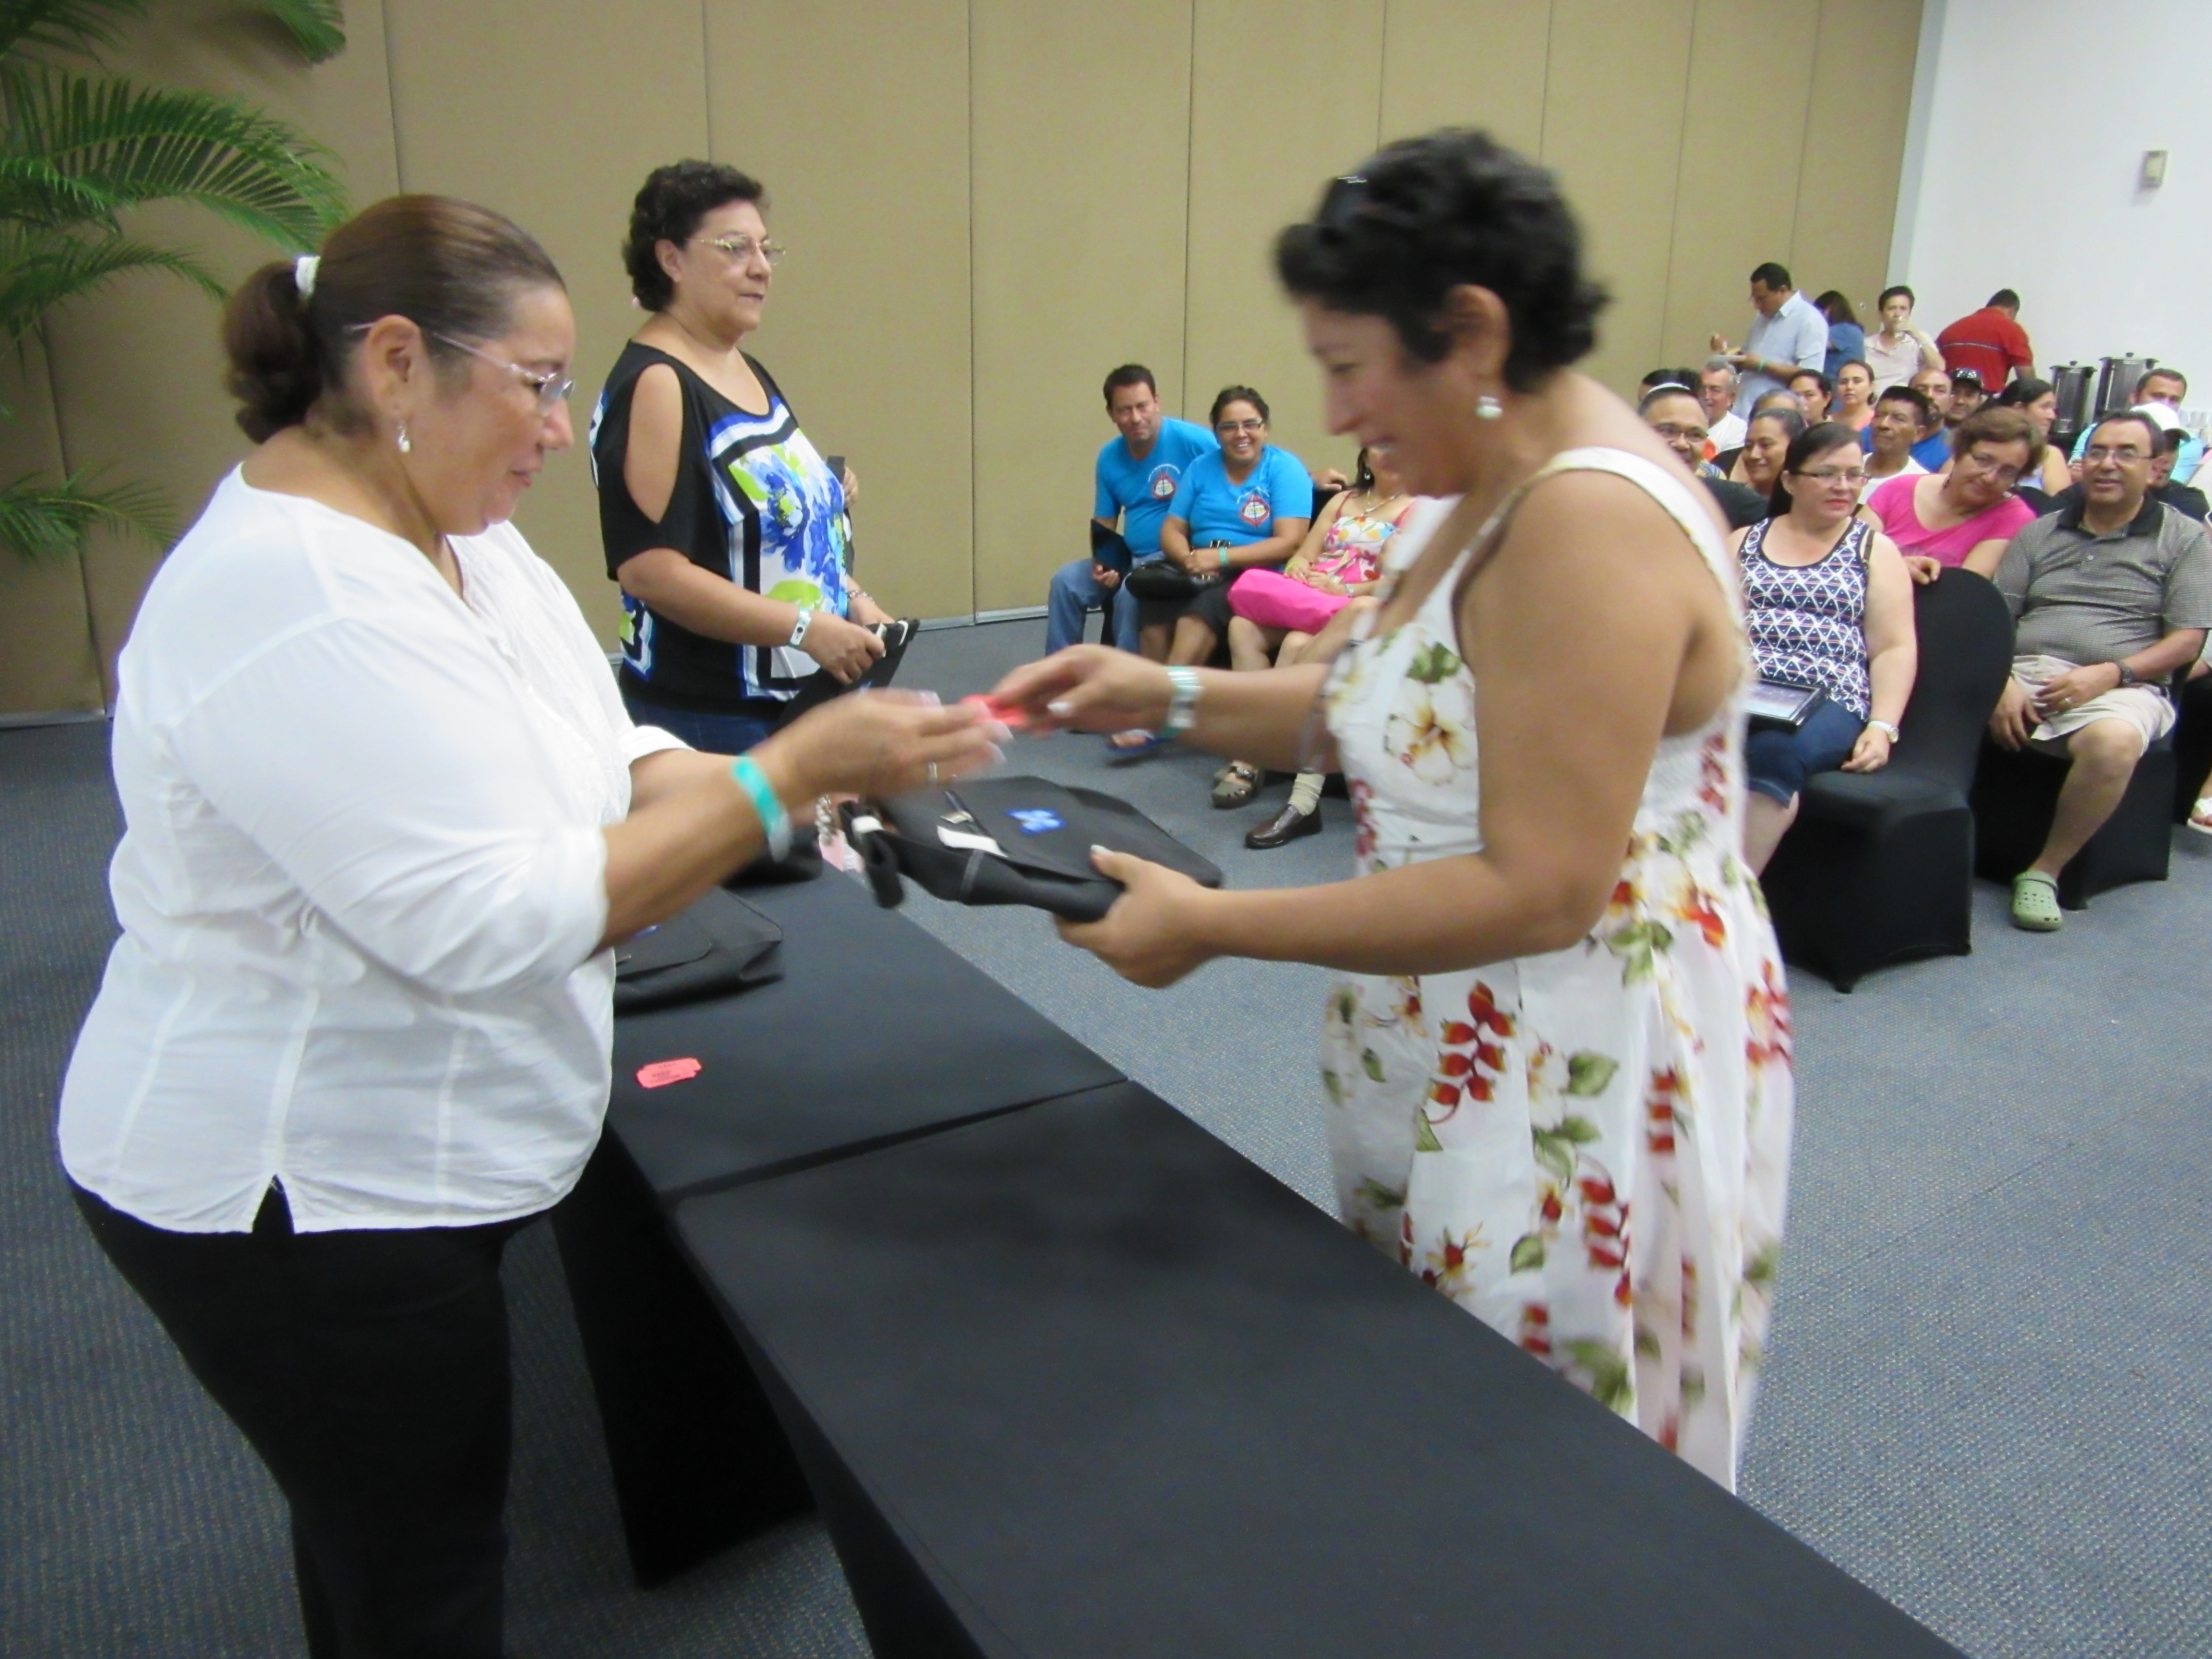 Sister Berali presenting purses donated for raffle